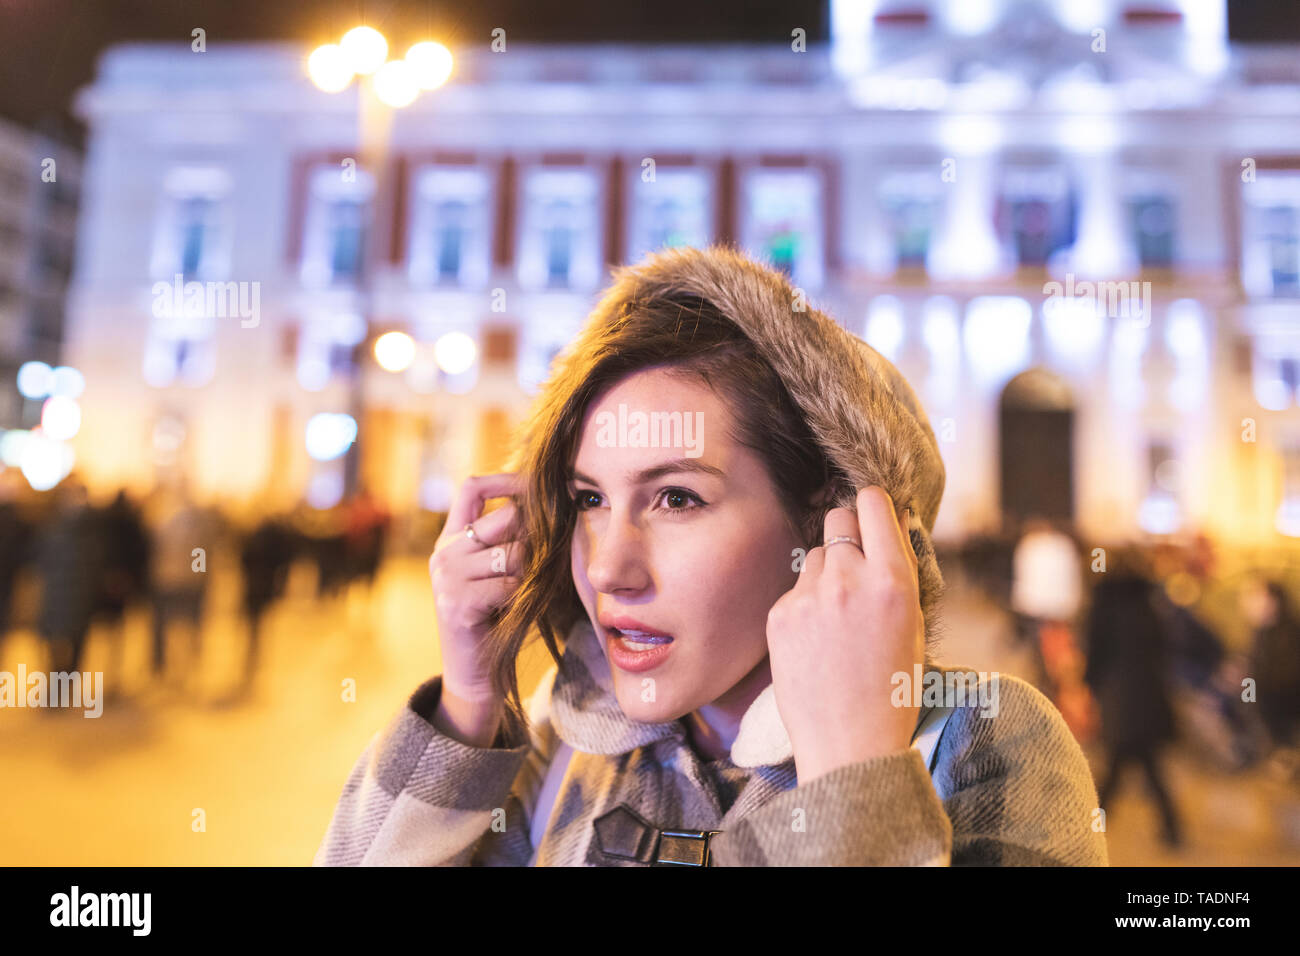 Espagne, Madrid, jeune femme portant une hotte Banque D'Images